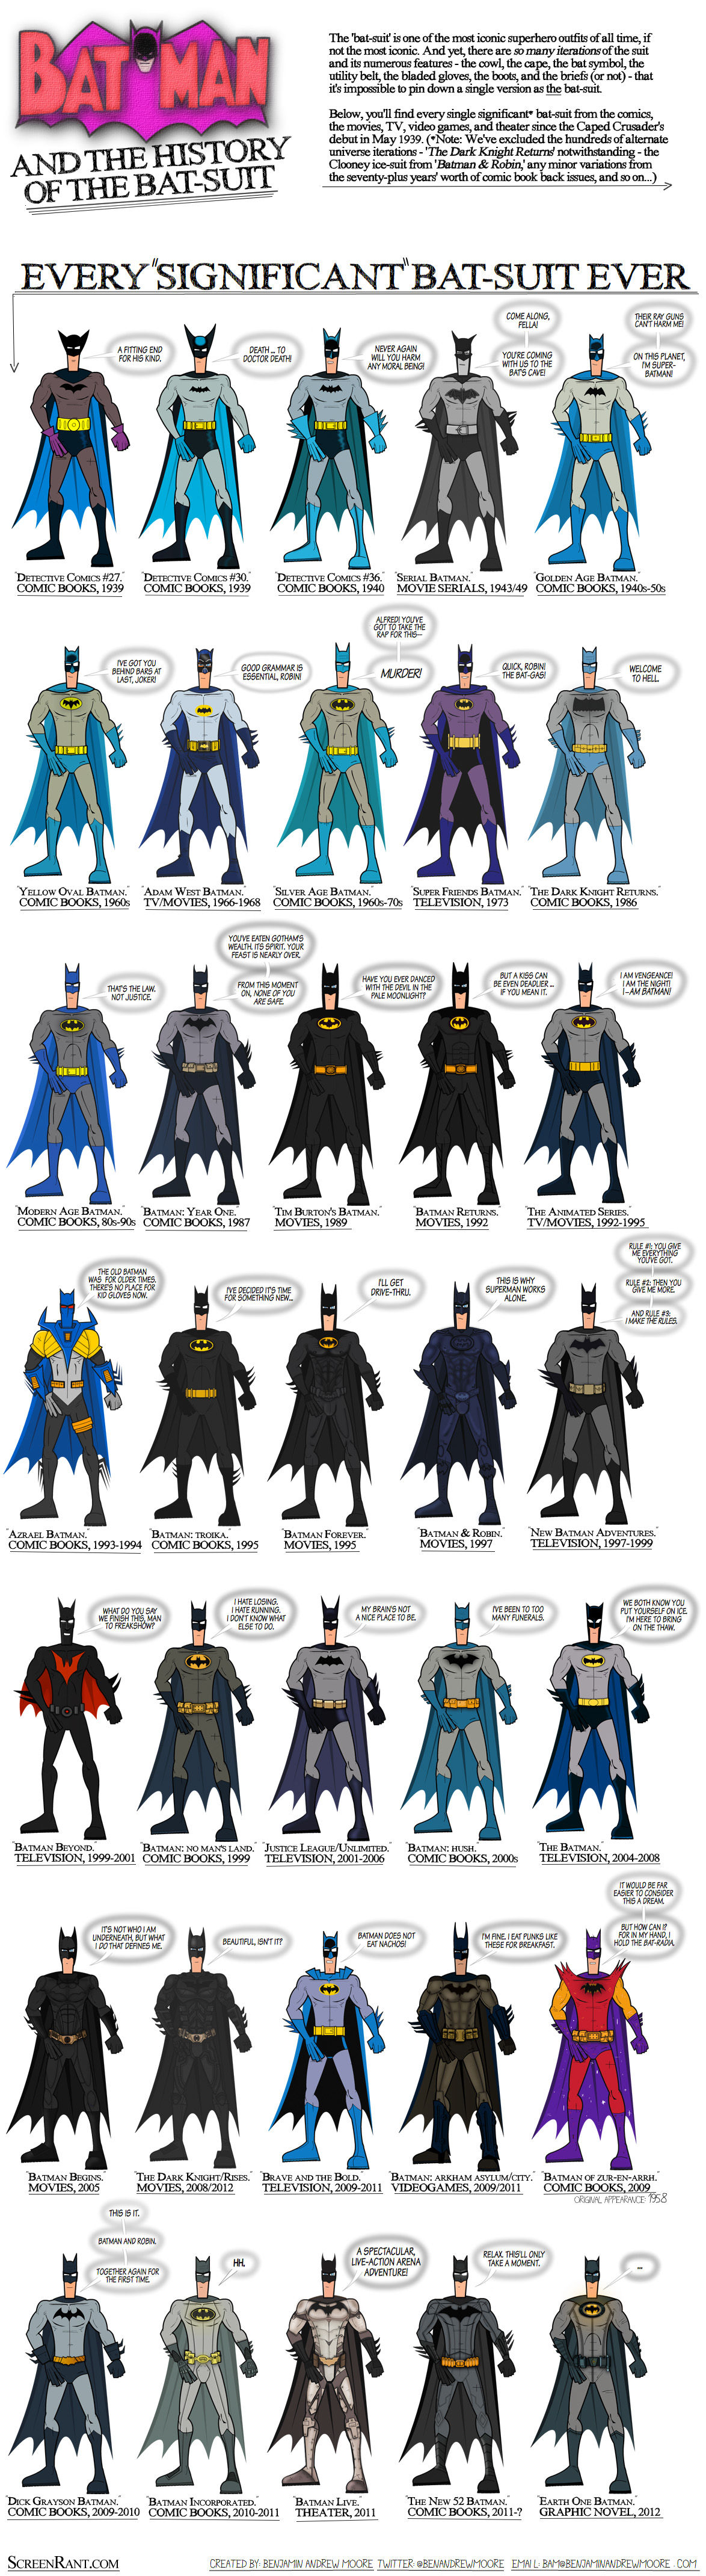 Every Batman bat-suit